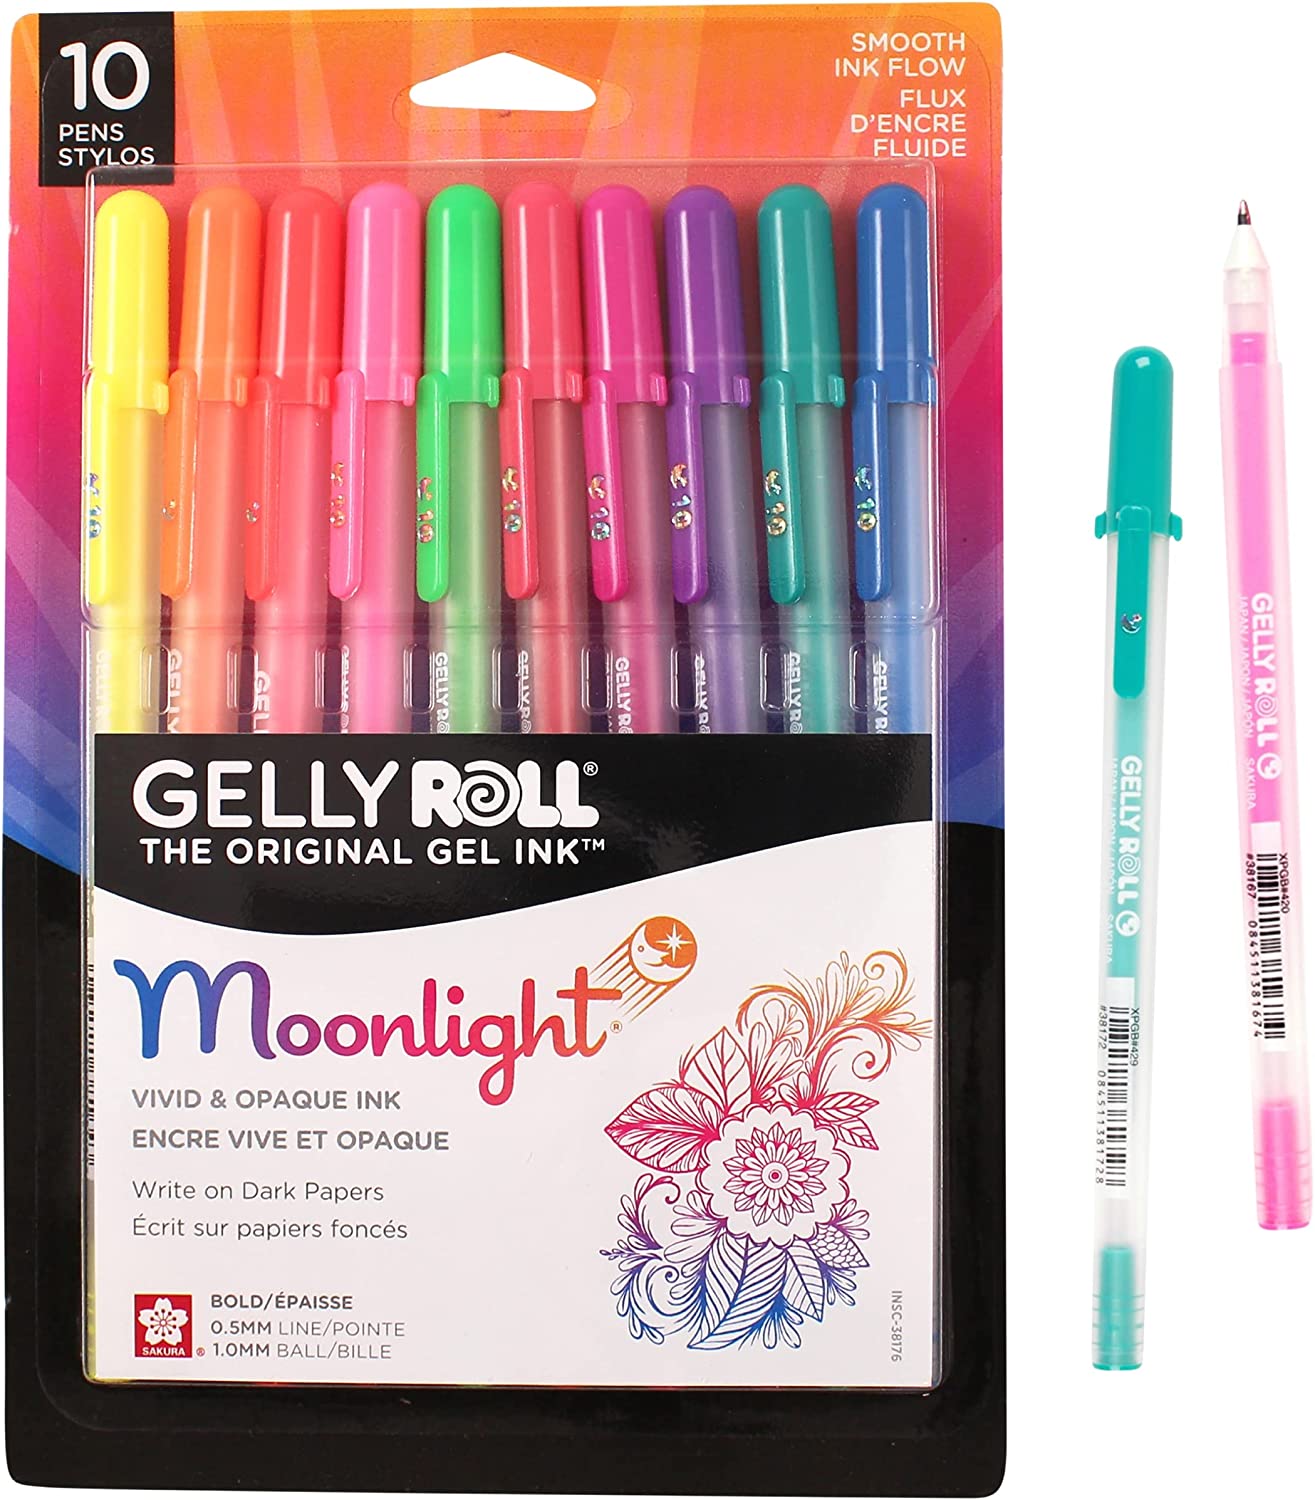 Gelly Roll Stardust Gel Pen, Assorted, 6 pack